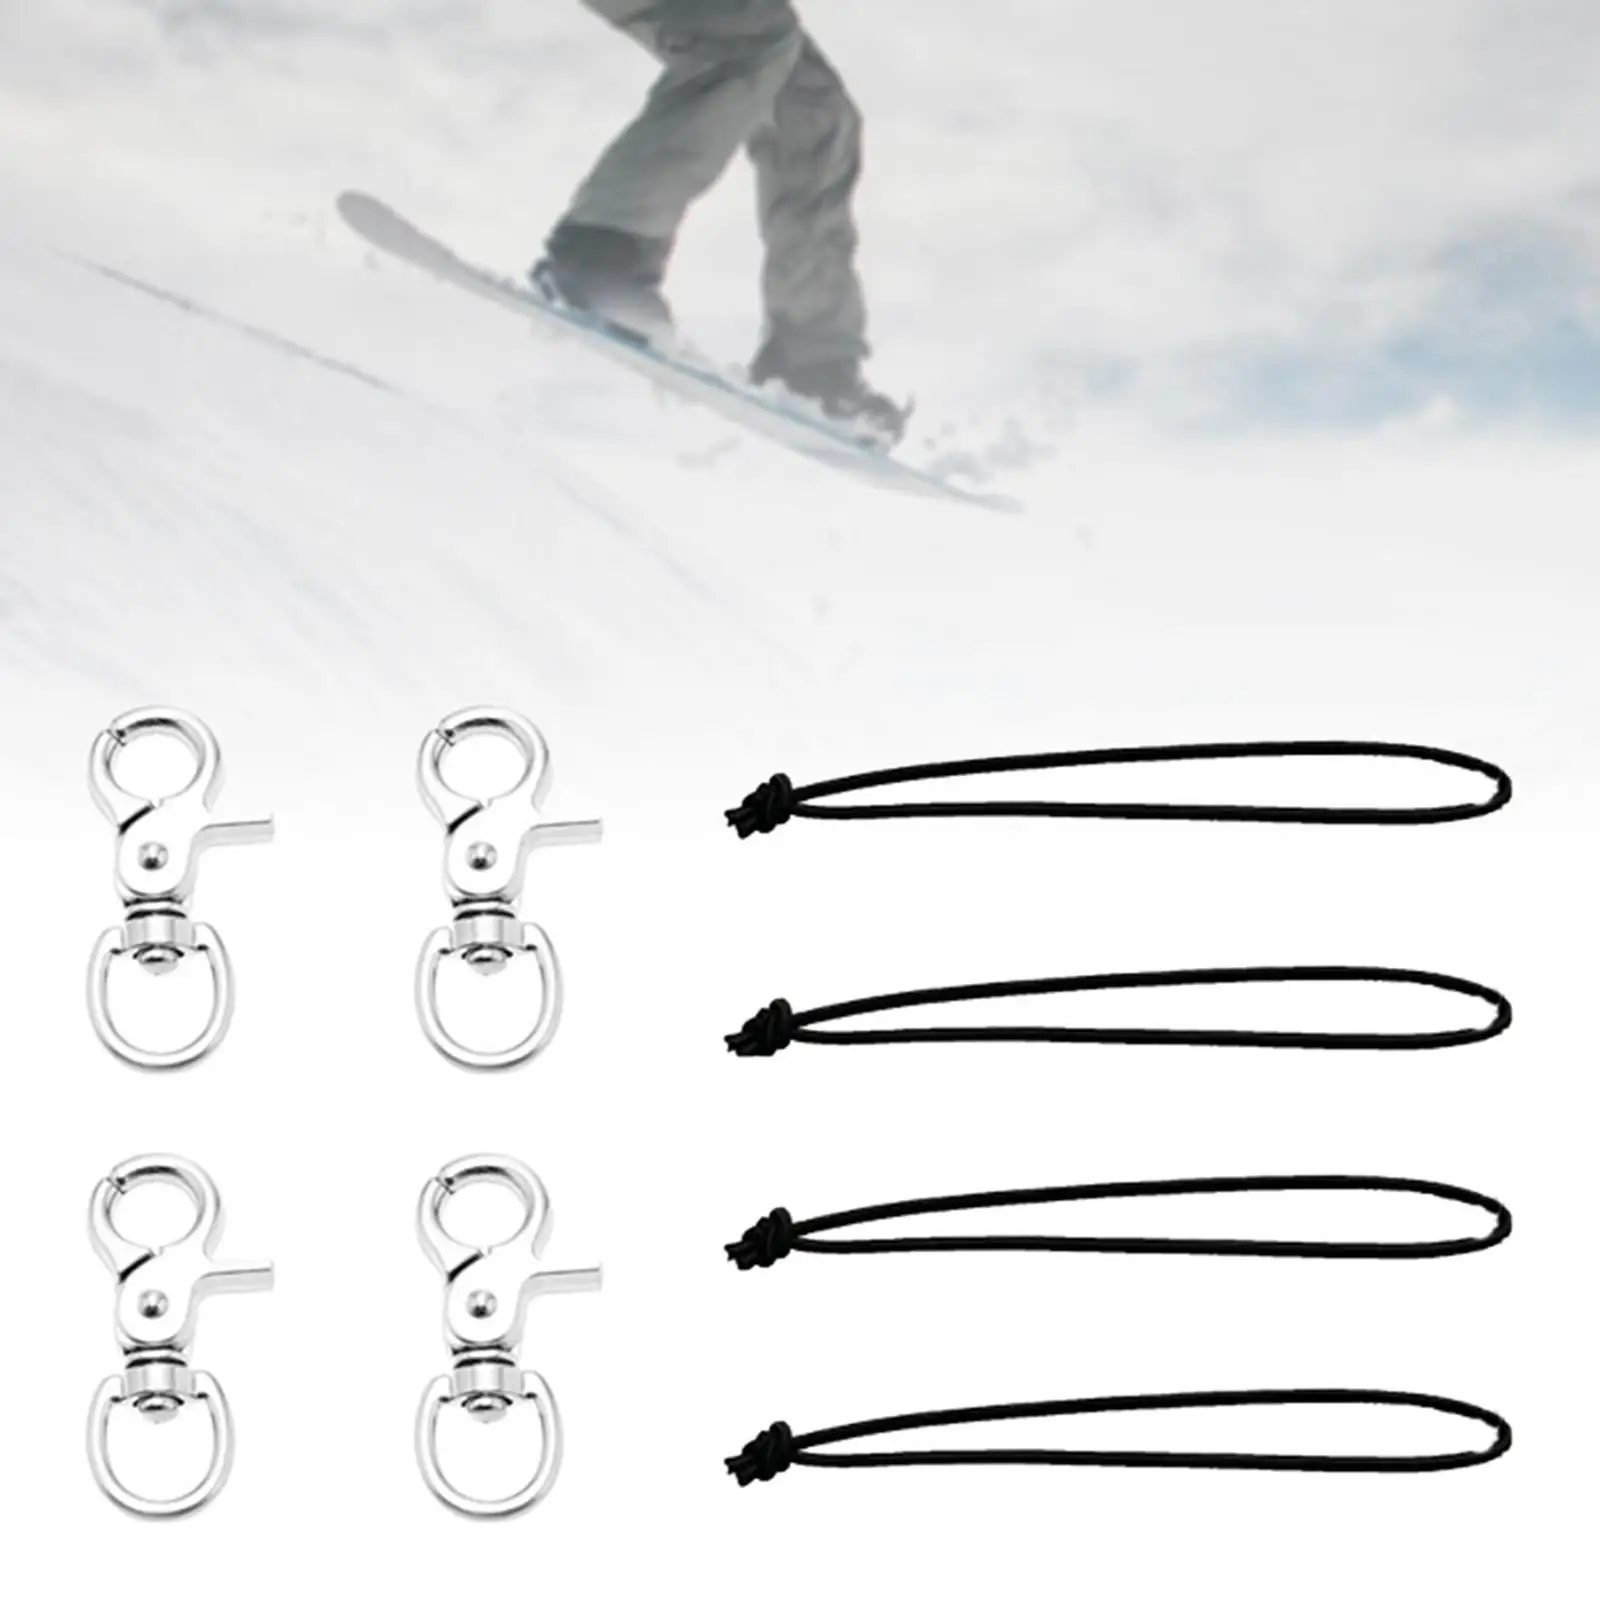 4x Skiing Snowboard Leash Cord Snowboard Bindings Useful for Professional